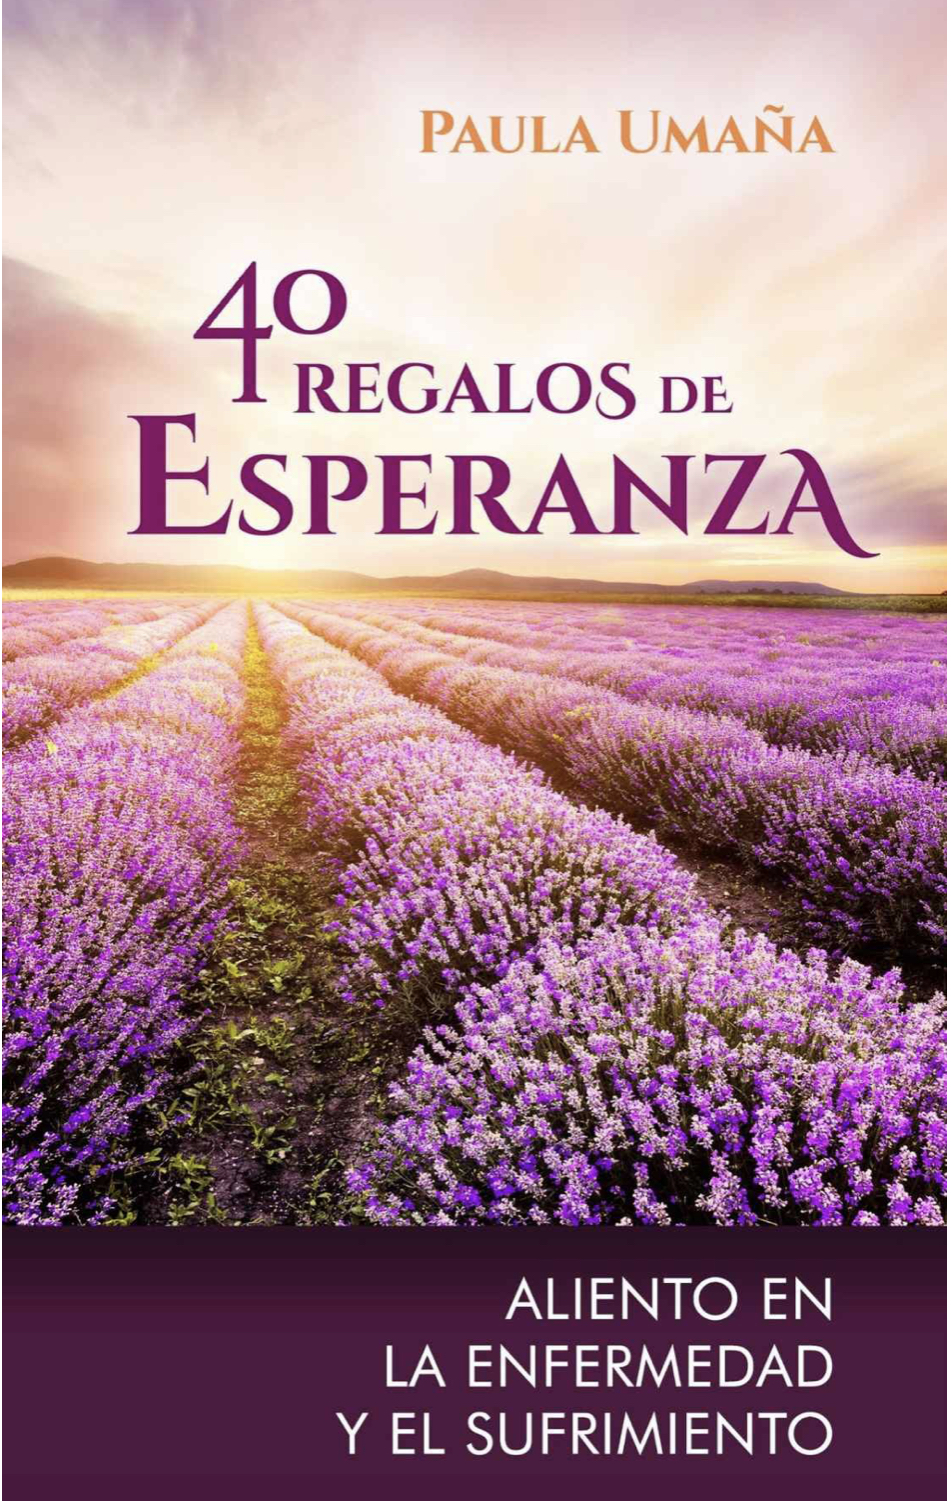 https://www.amazon.com/40-Regalos-Esperanza-enfermedad-sufrimiento-ebook/dp/B09781TX16